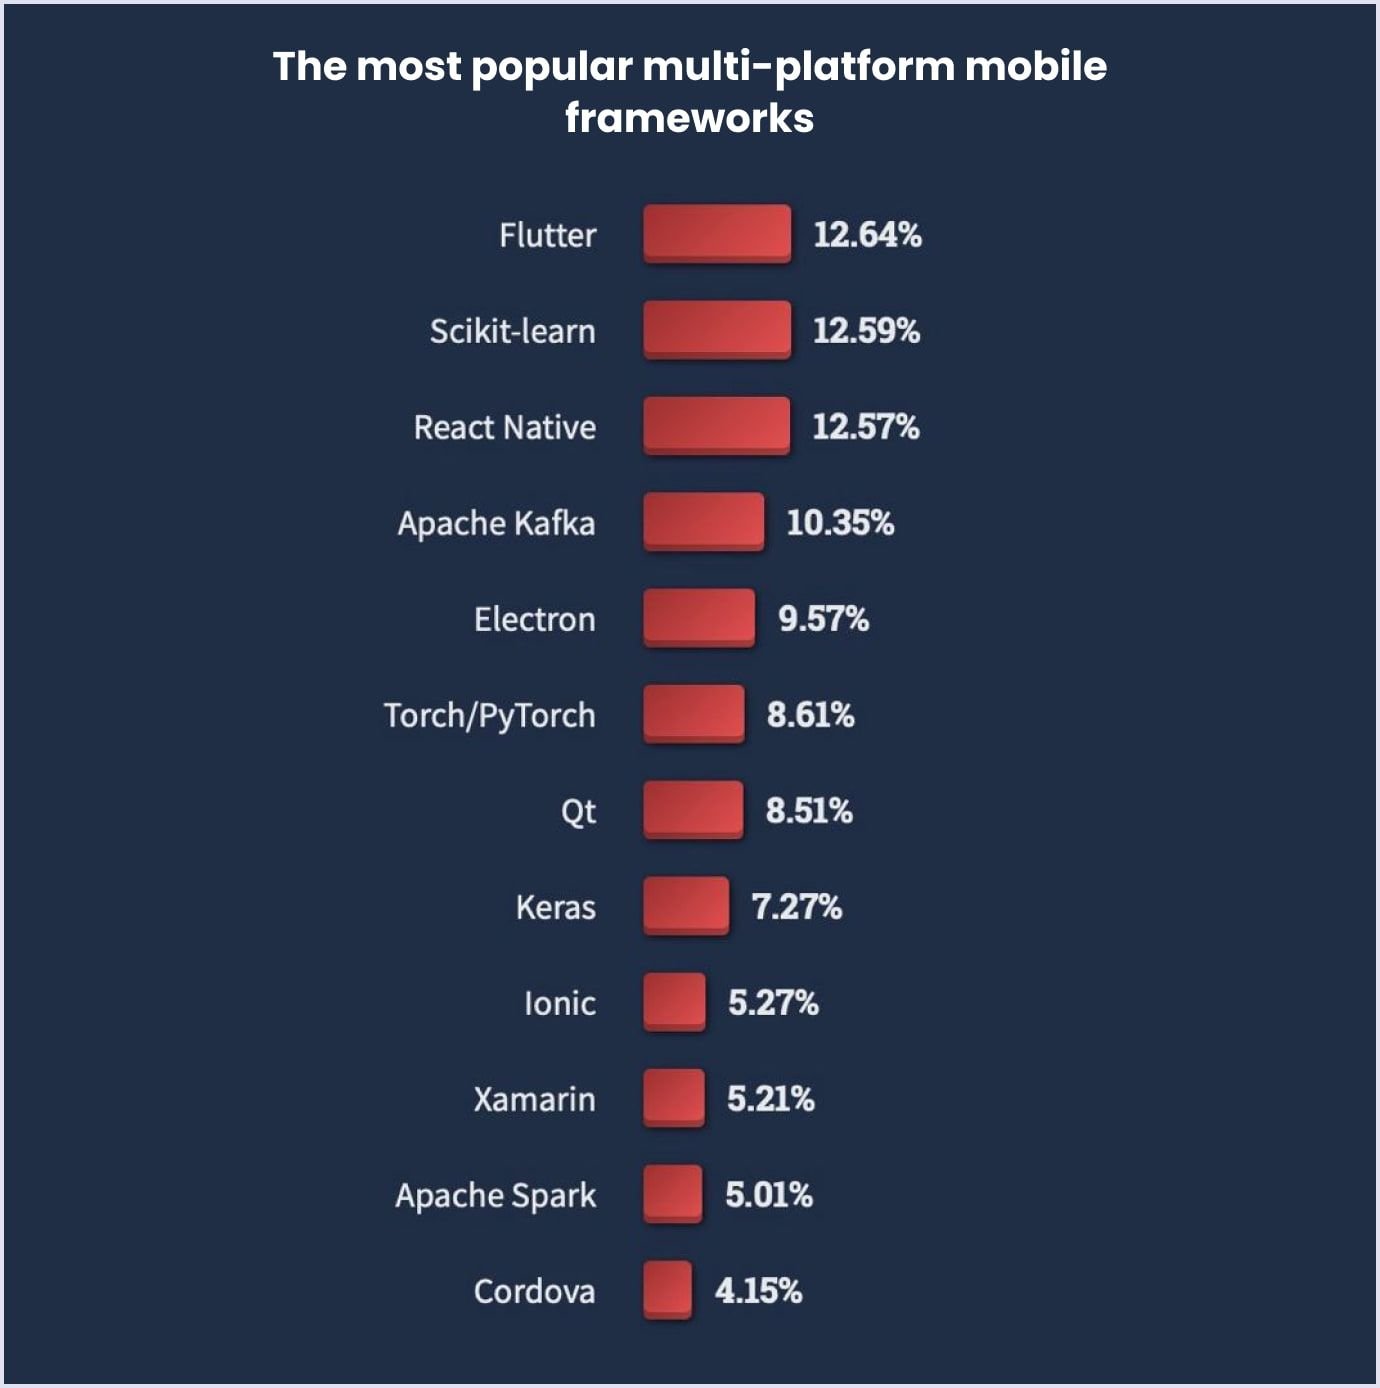 The most popular multi-platform mobile frameworks